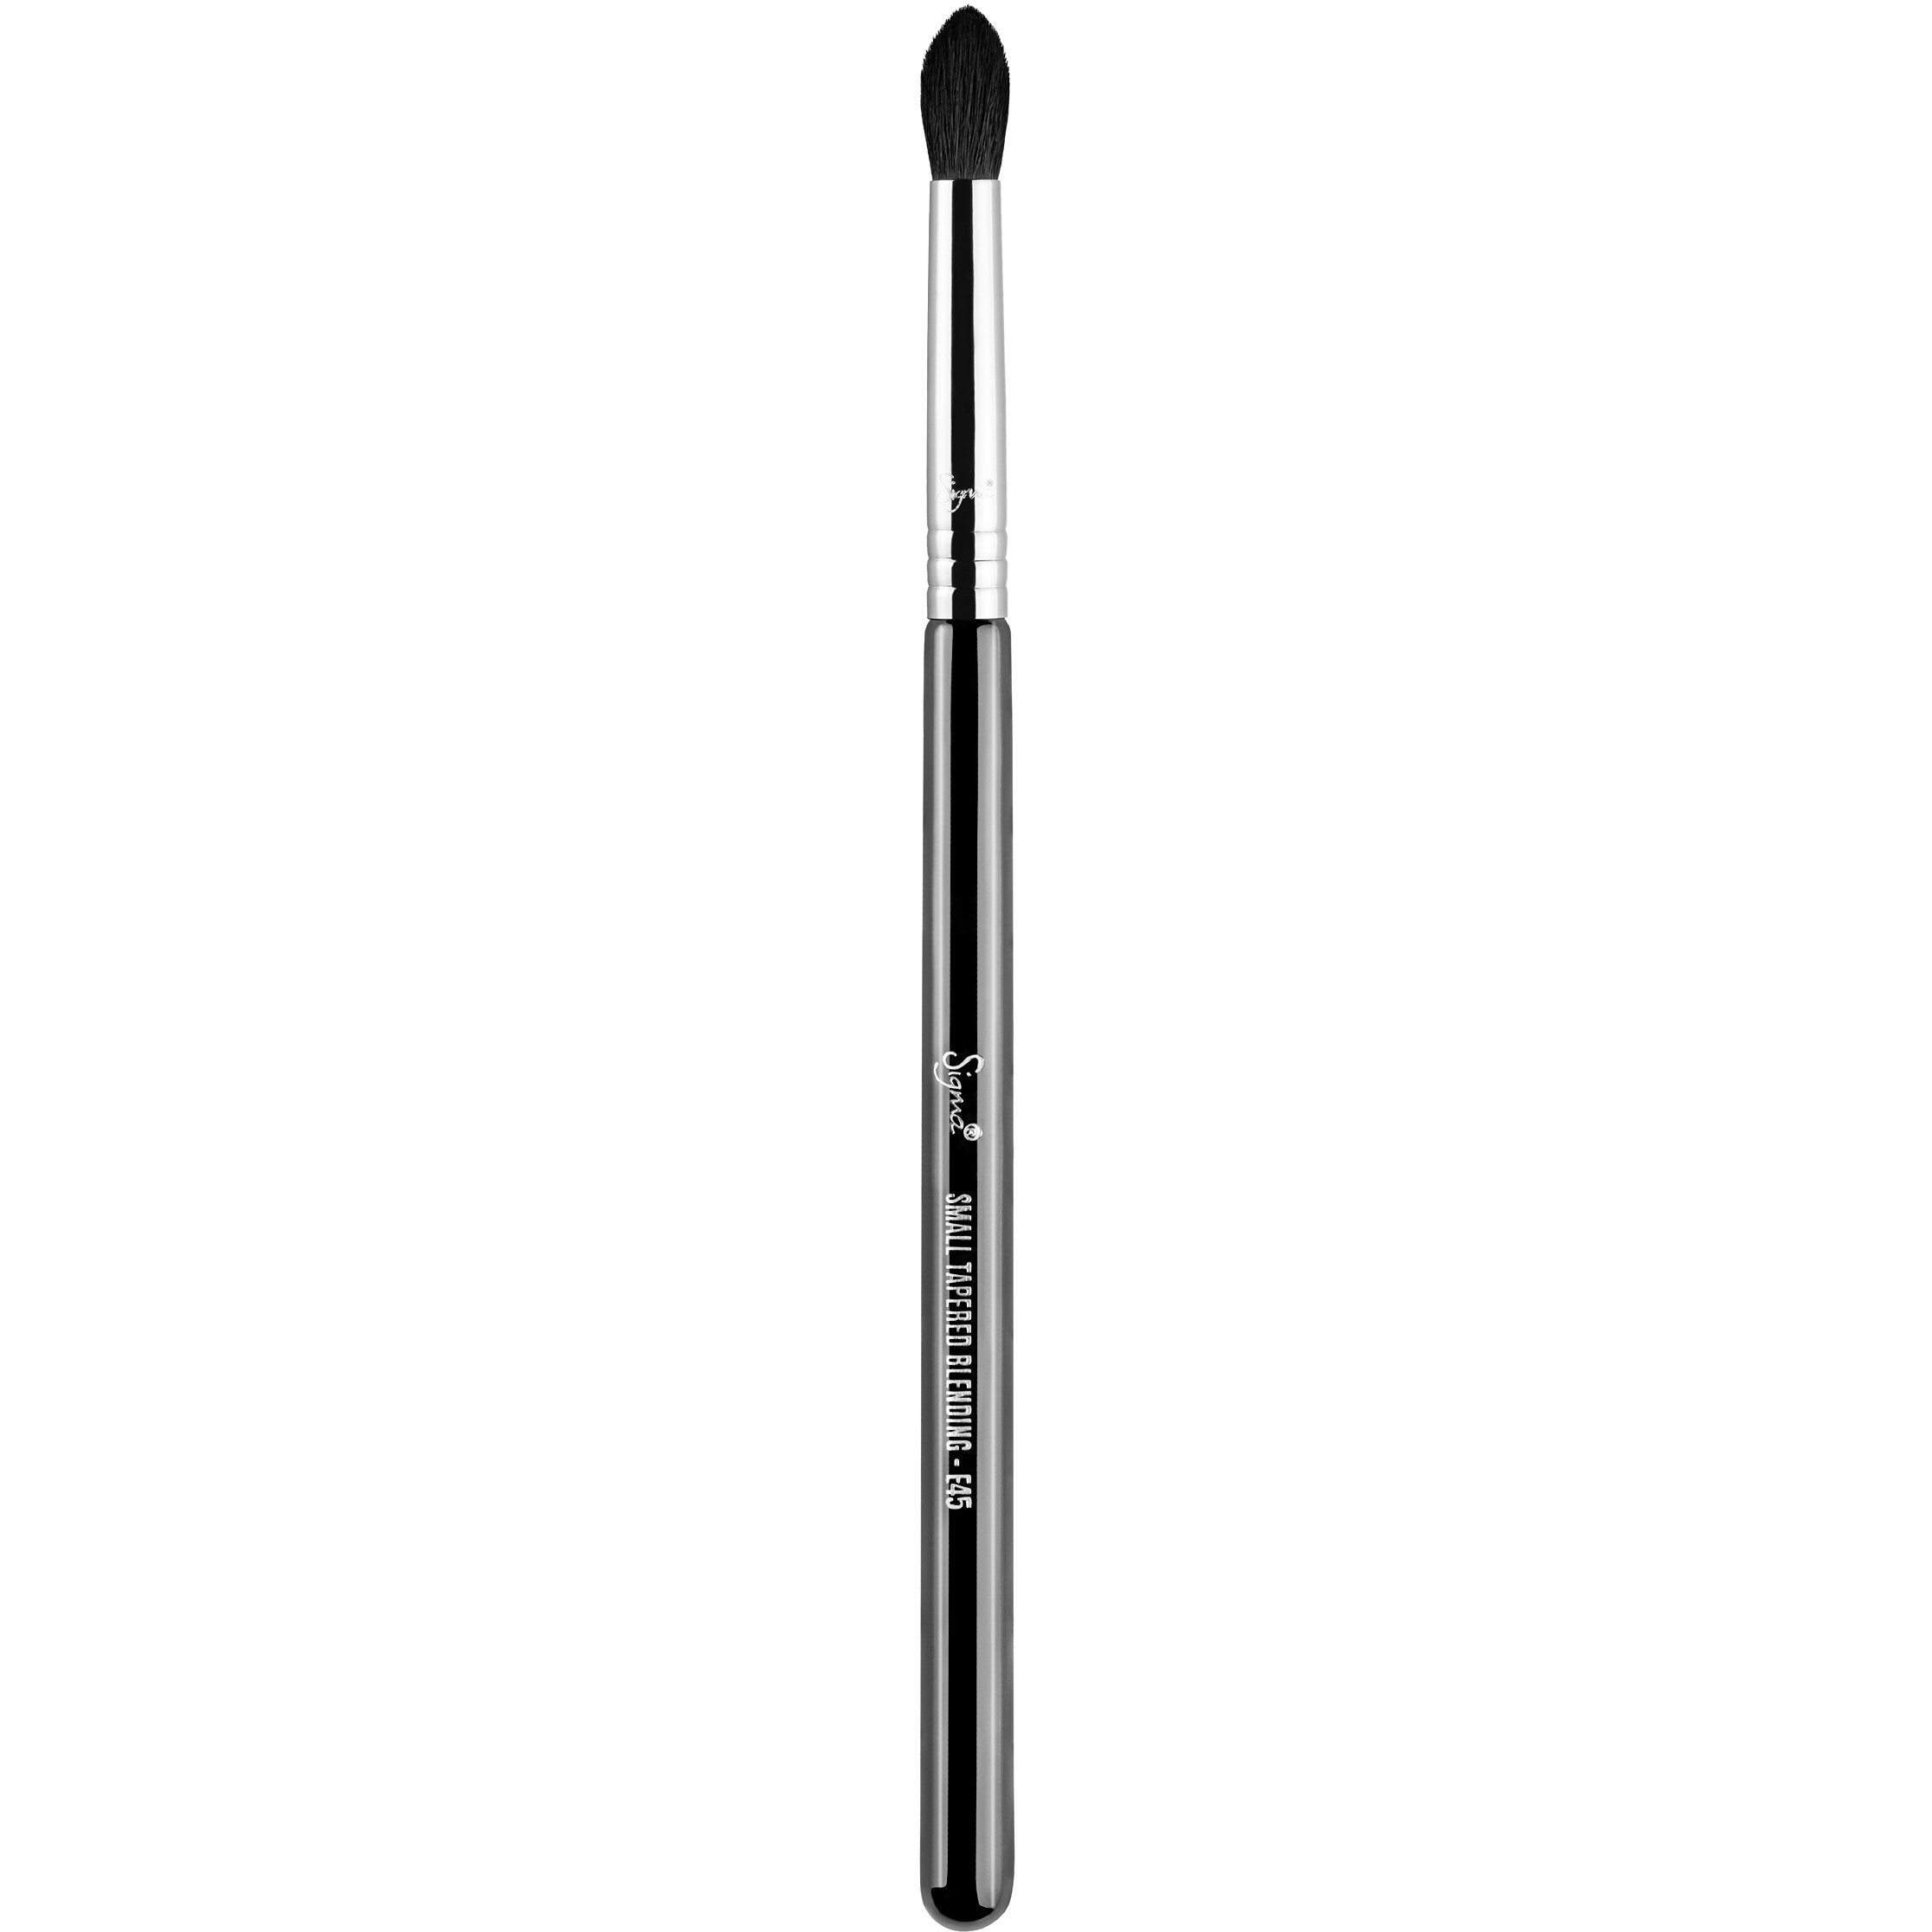 Bilde av Sigma Beauty Brushes E45 - Small Tapered Blending Brush